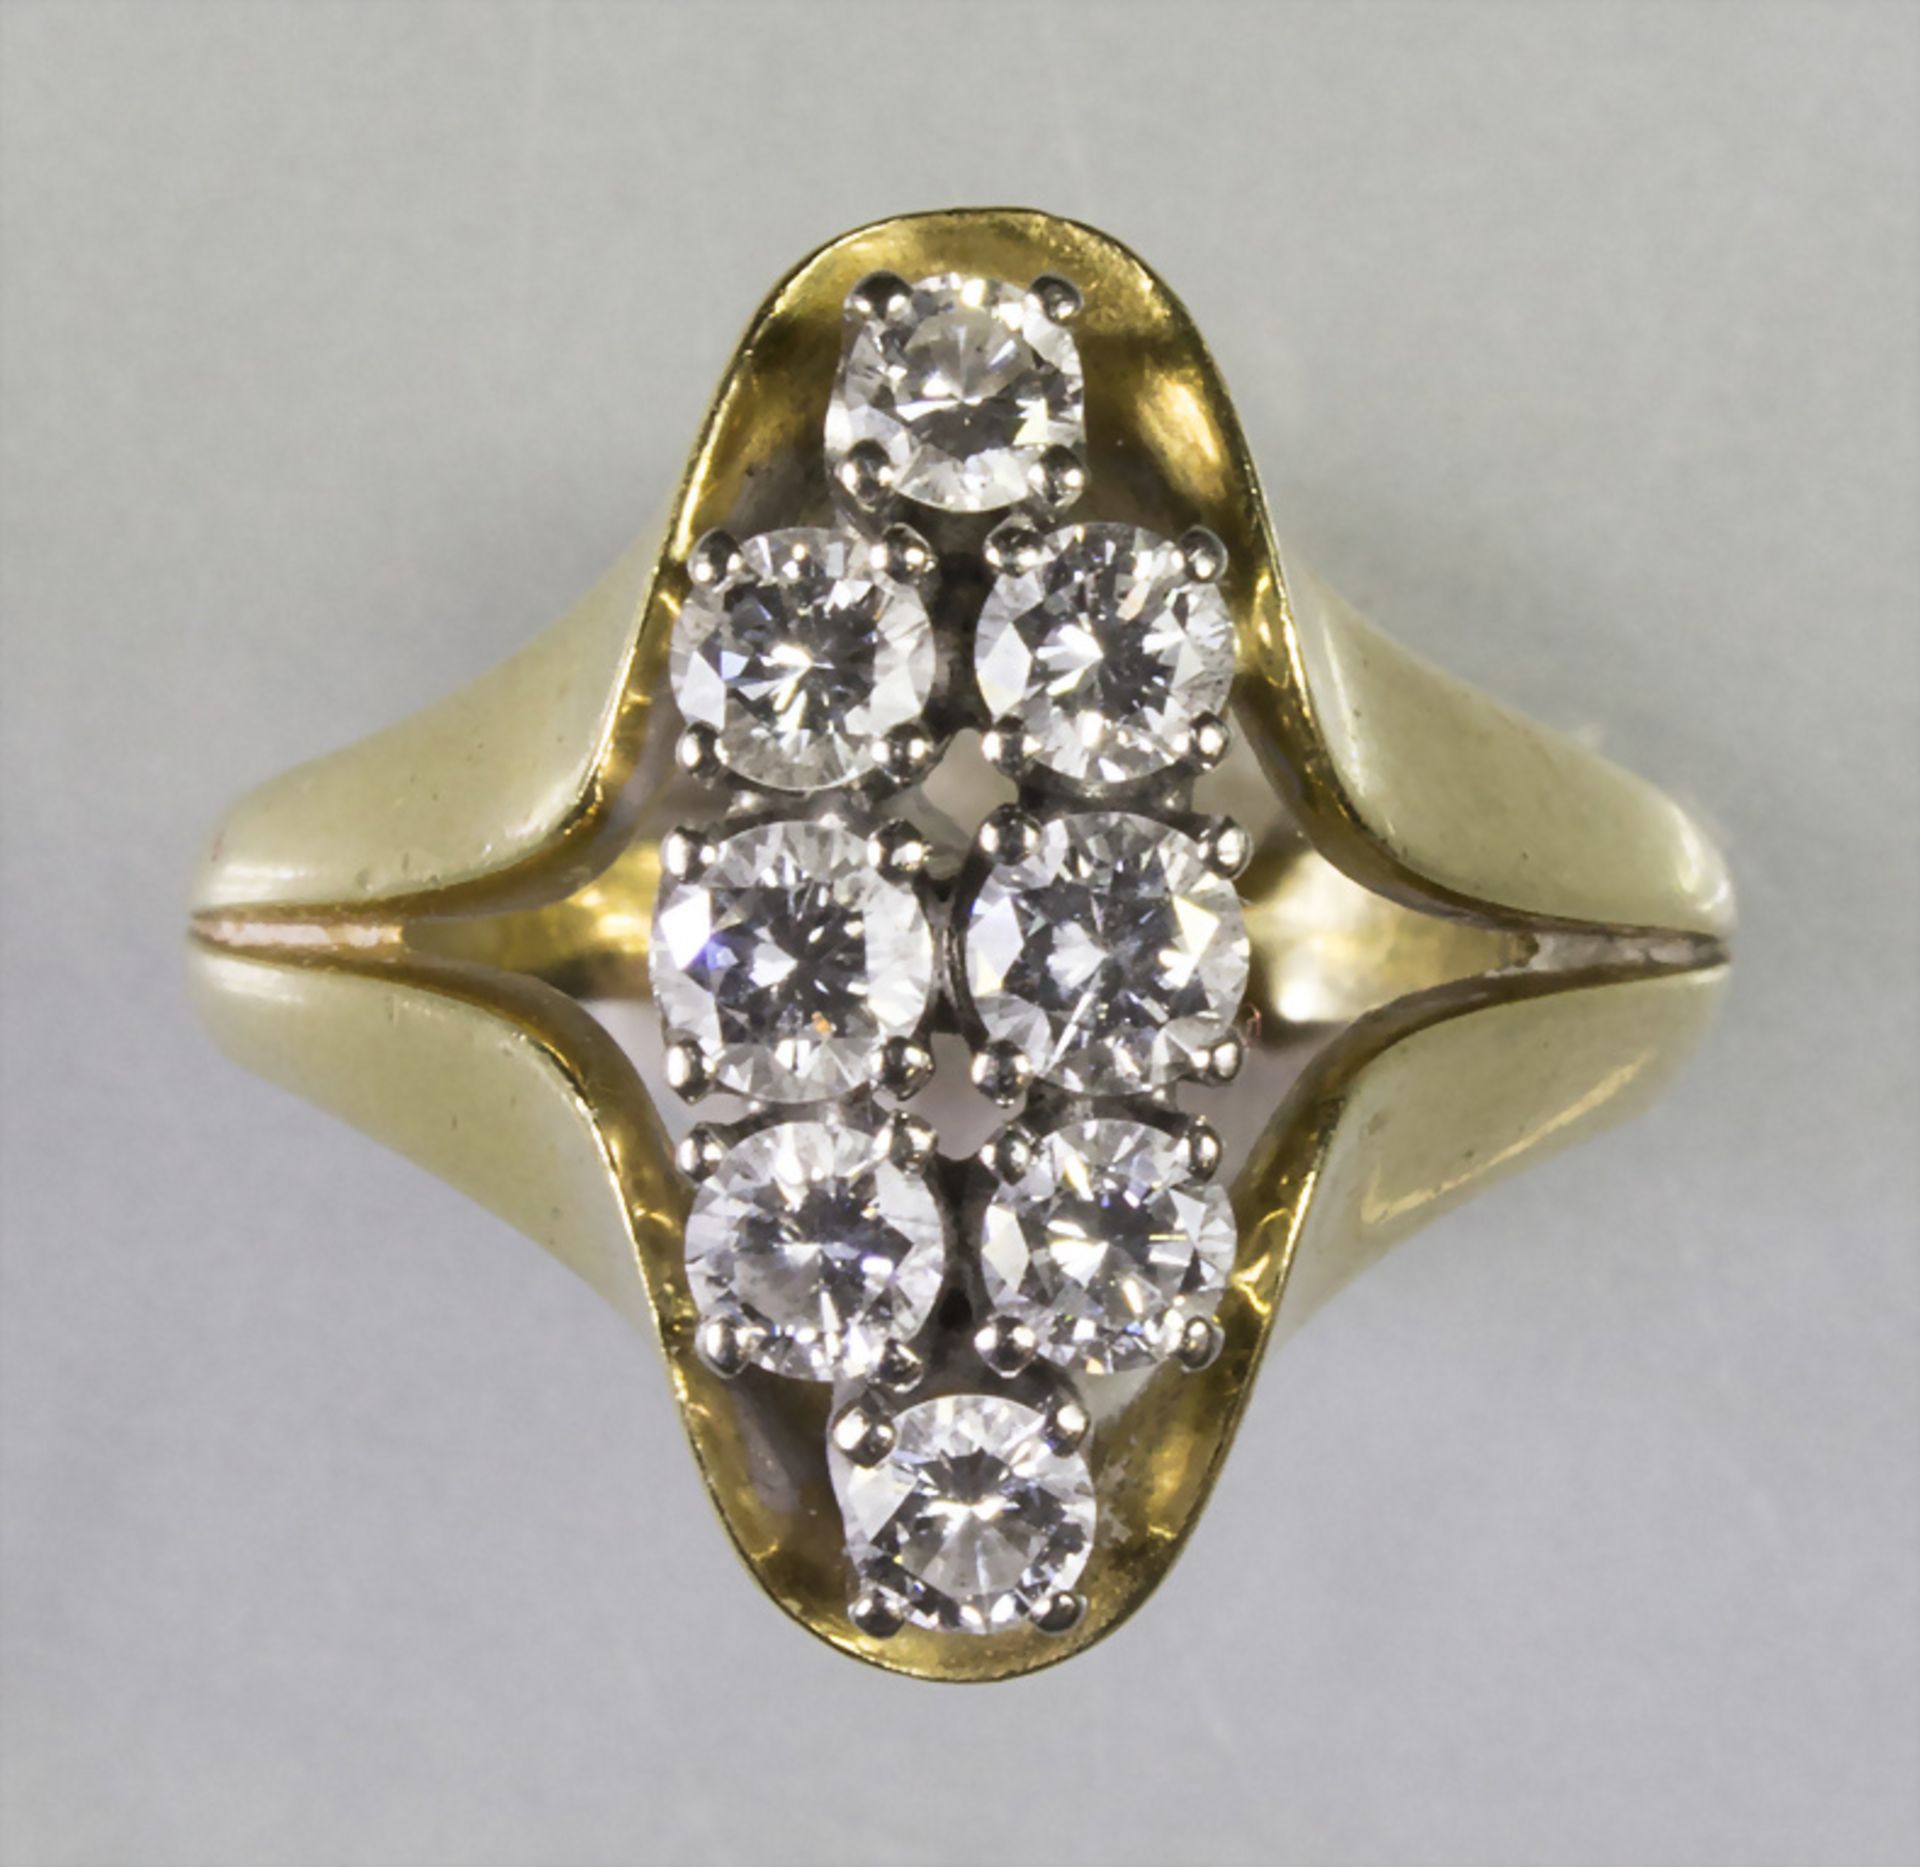 Damenring in Gelbgold mit Diamanten / A ladies 18k gold ring with diamonds - Bild 4 aus 4